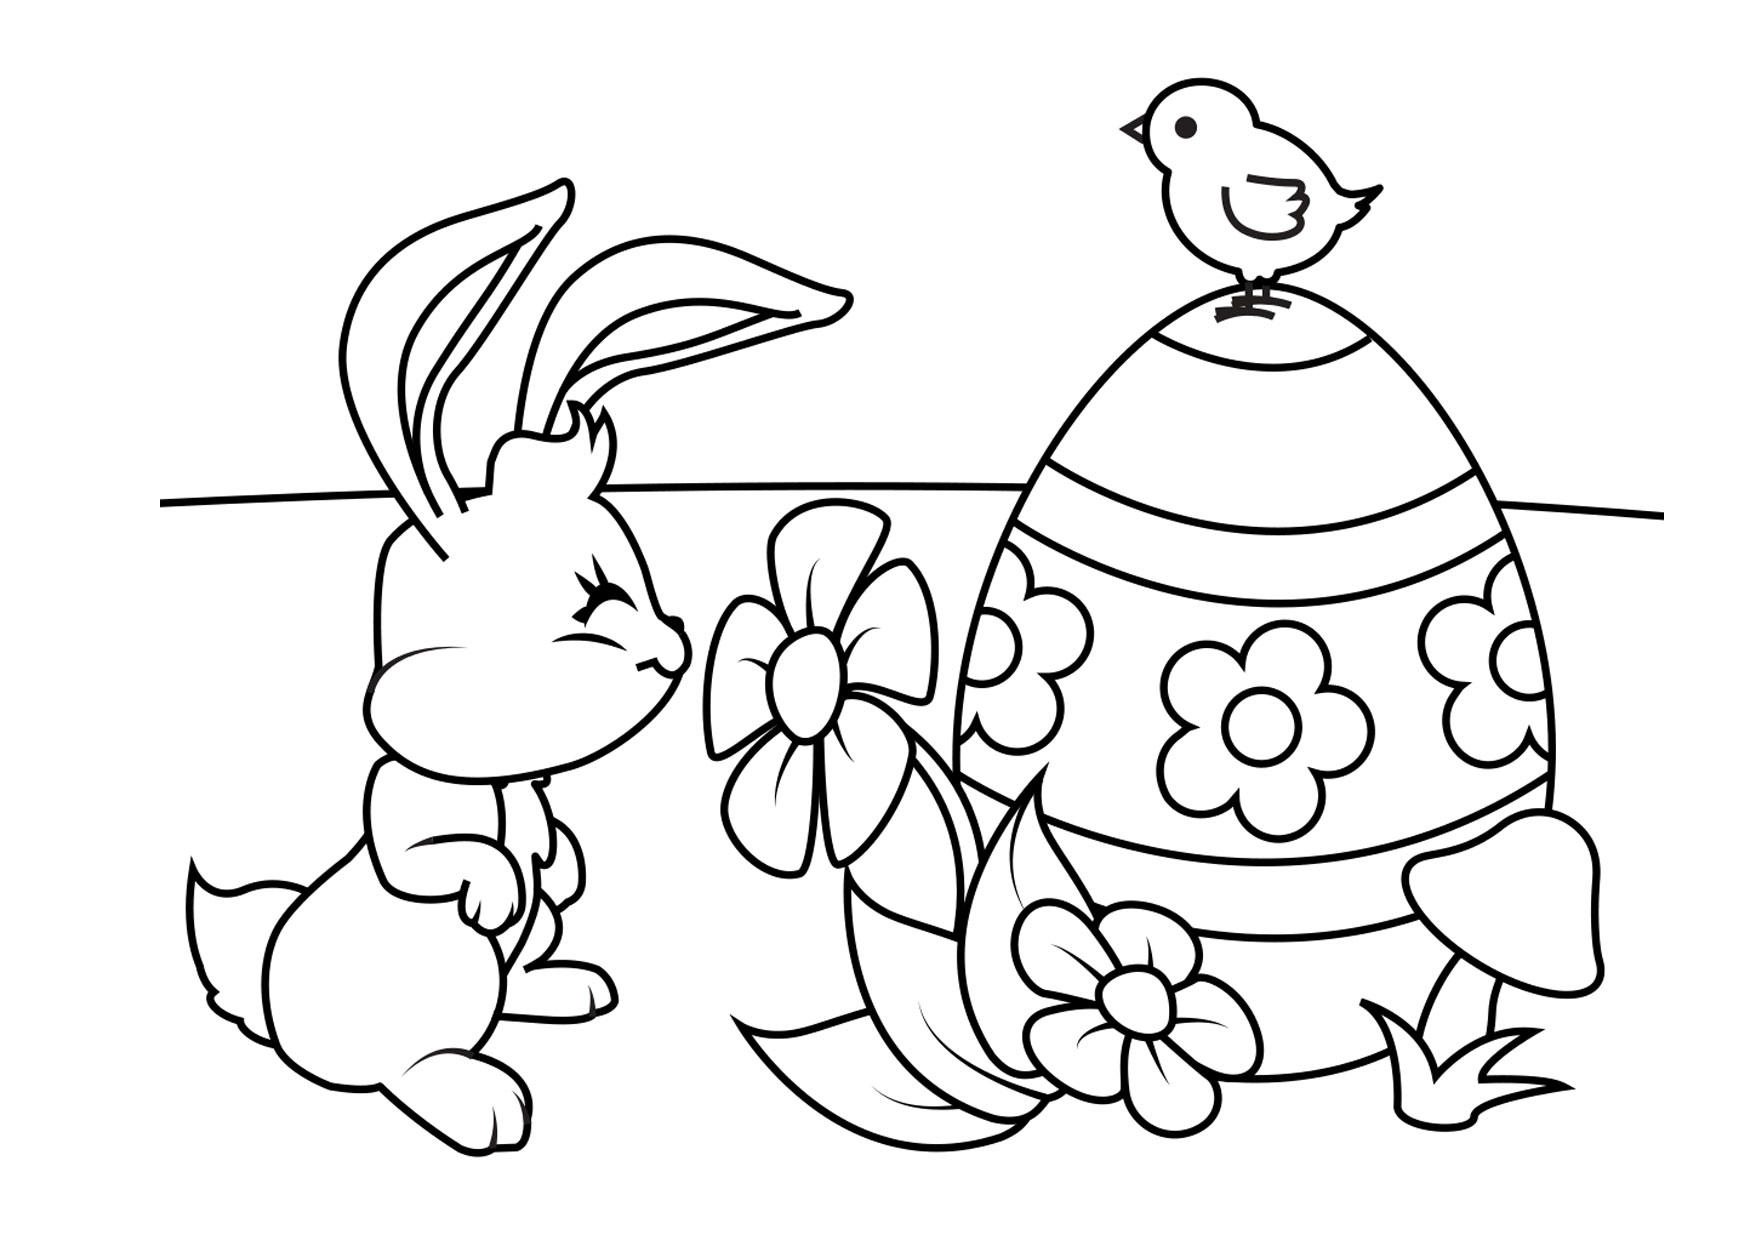 Dibujo para colorear Conejito de Pascua con huevo de Pascua y pollo -  Dibujos Para Imprimir Gratis - Img 30854